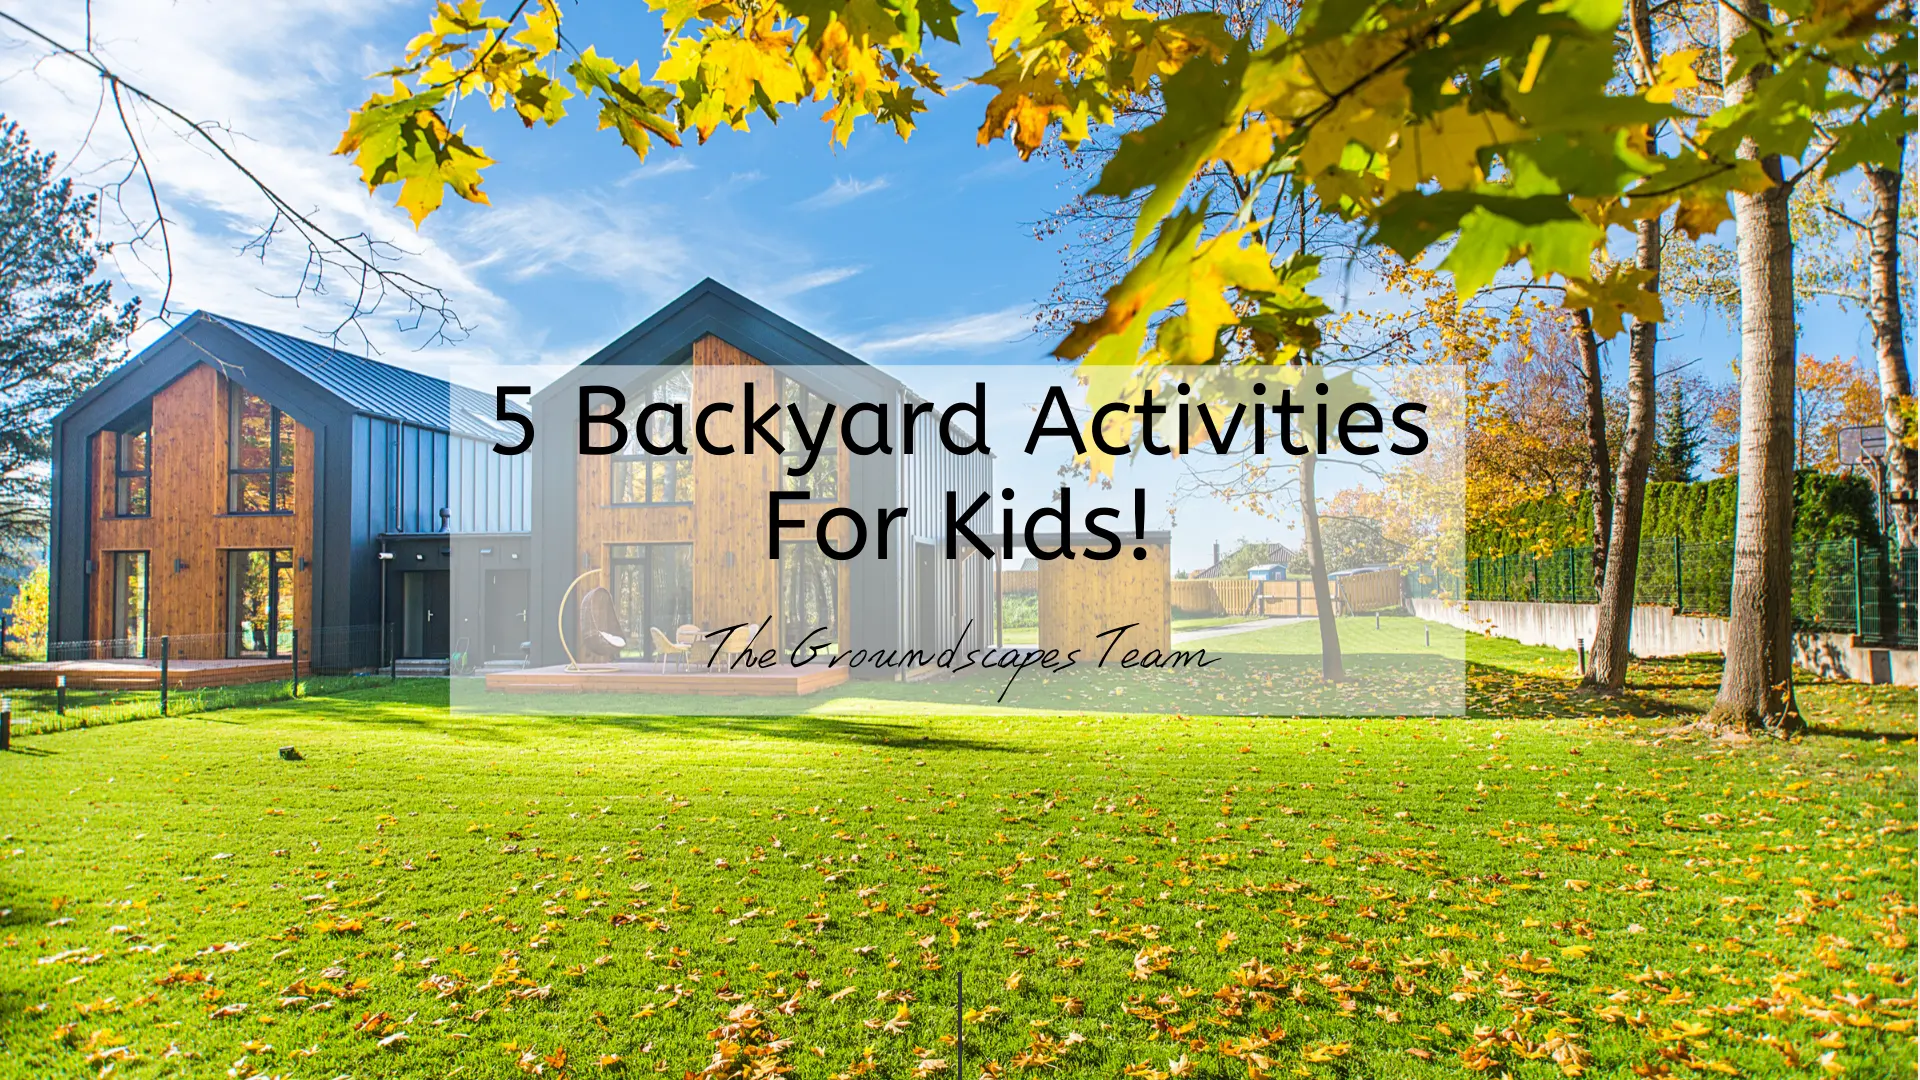 5 Backyard Activities For Kids!